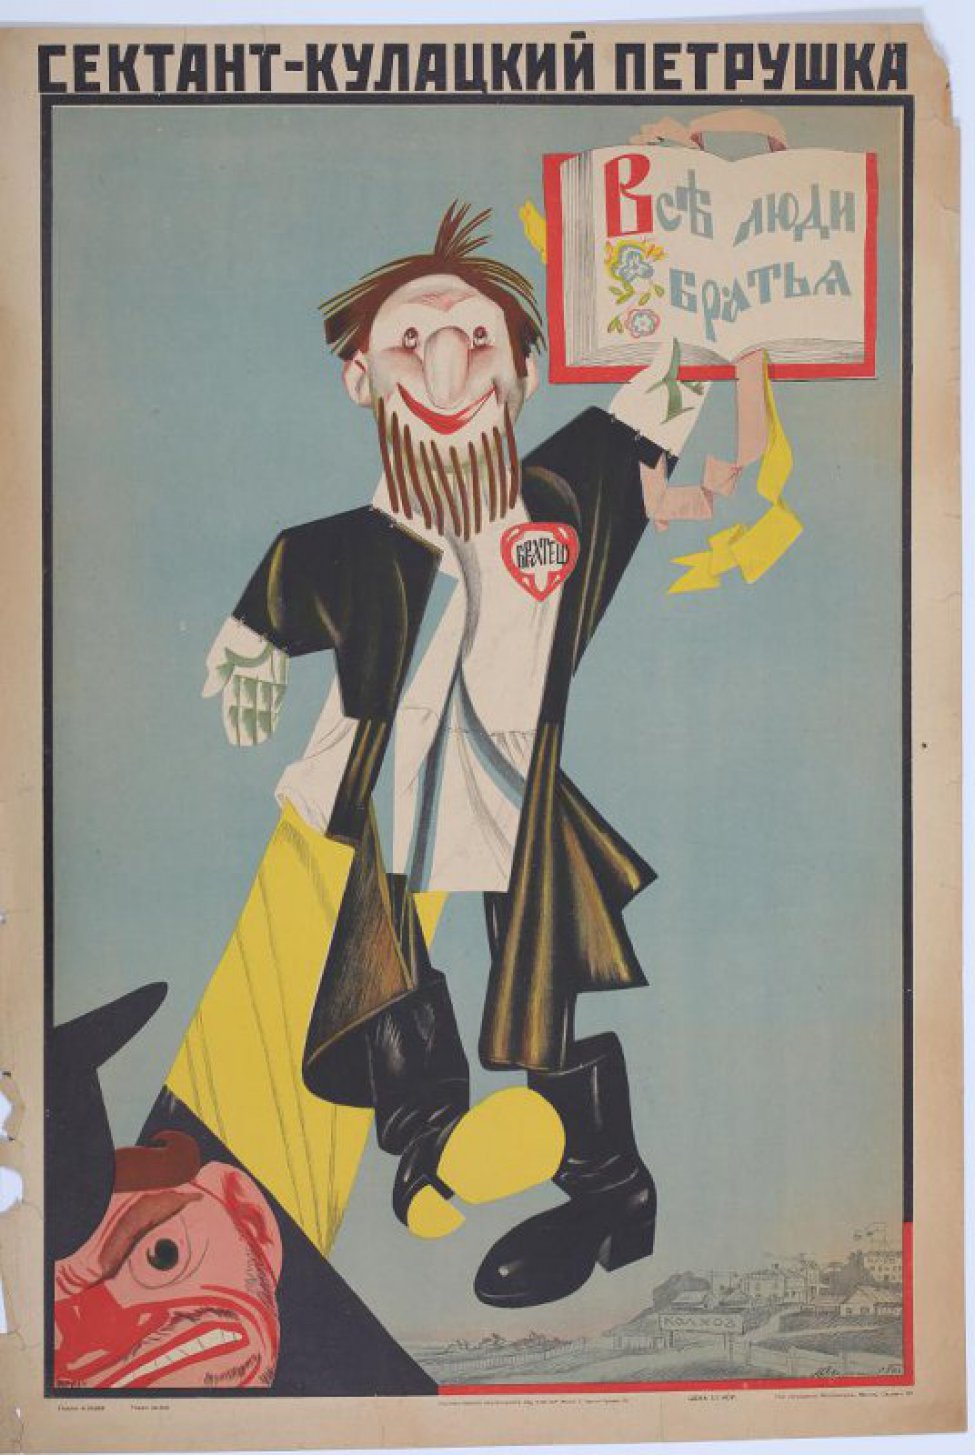 Изображен сектант в образе Петрушки держащего книгу с надписью: " Всеъ люди братья". Он поддерживается рукой кулака, который находится в нижнем углу. Внизу справа колхоз.